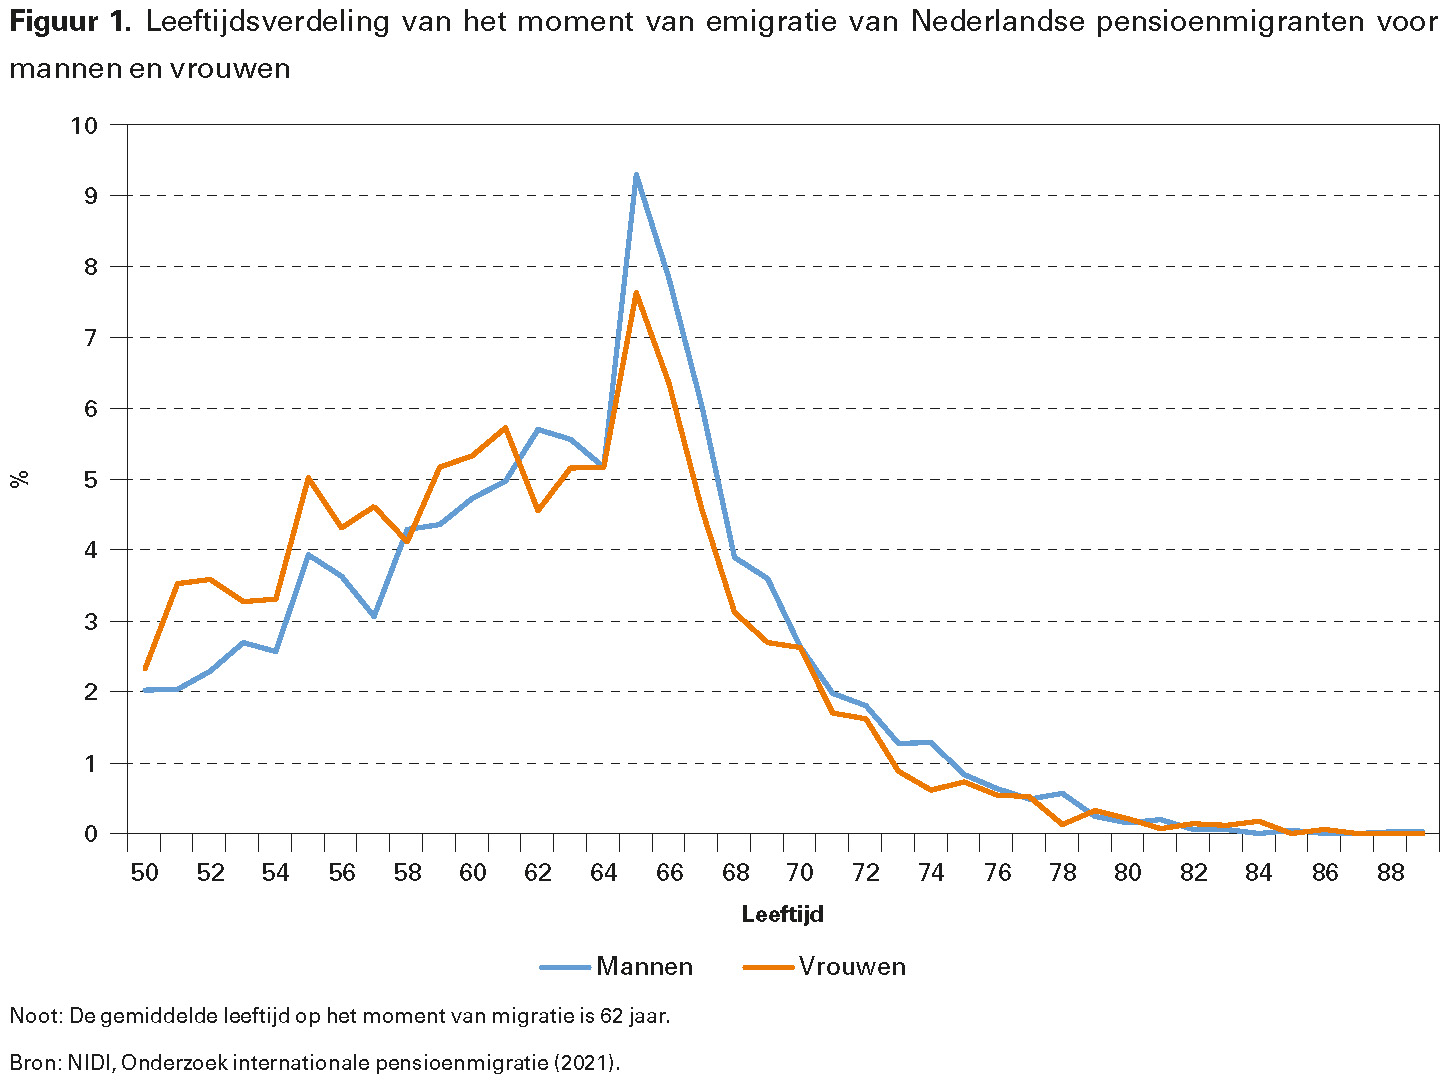 Figuur 1. Leeftijdsverdeling van het moment van emigratie van Nederlandse pensioenmigranten voor mannen en vrouwen